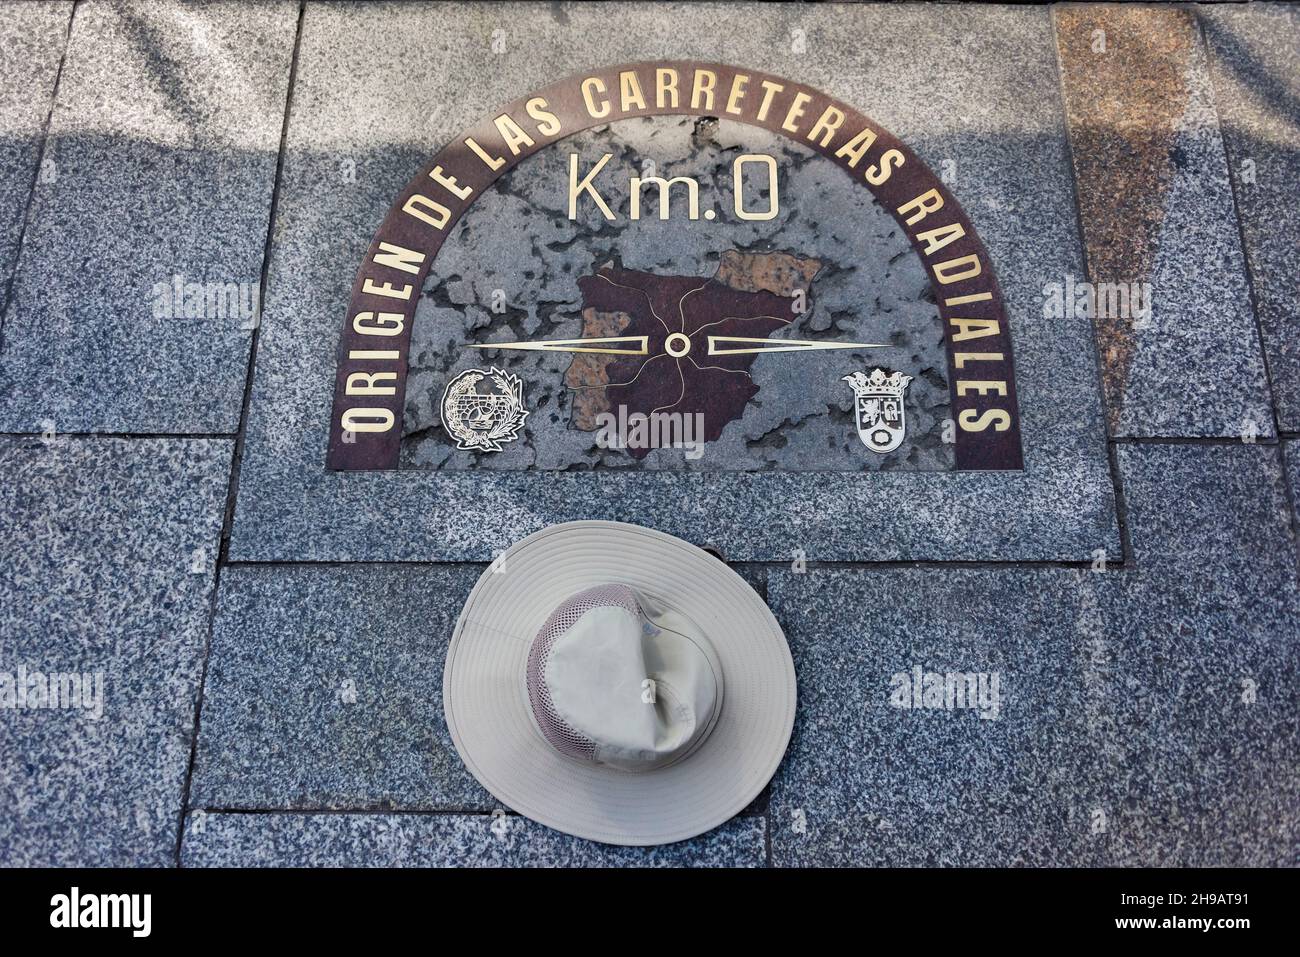 Kilómetro Cero, una losa de piedra en Madrid que marca el punto desde el cual se mide la distancia de las carreteras nacionales de España, Puerta del Sol, Madrid, Sp Foto de stock